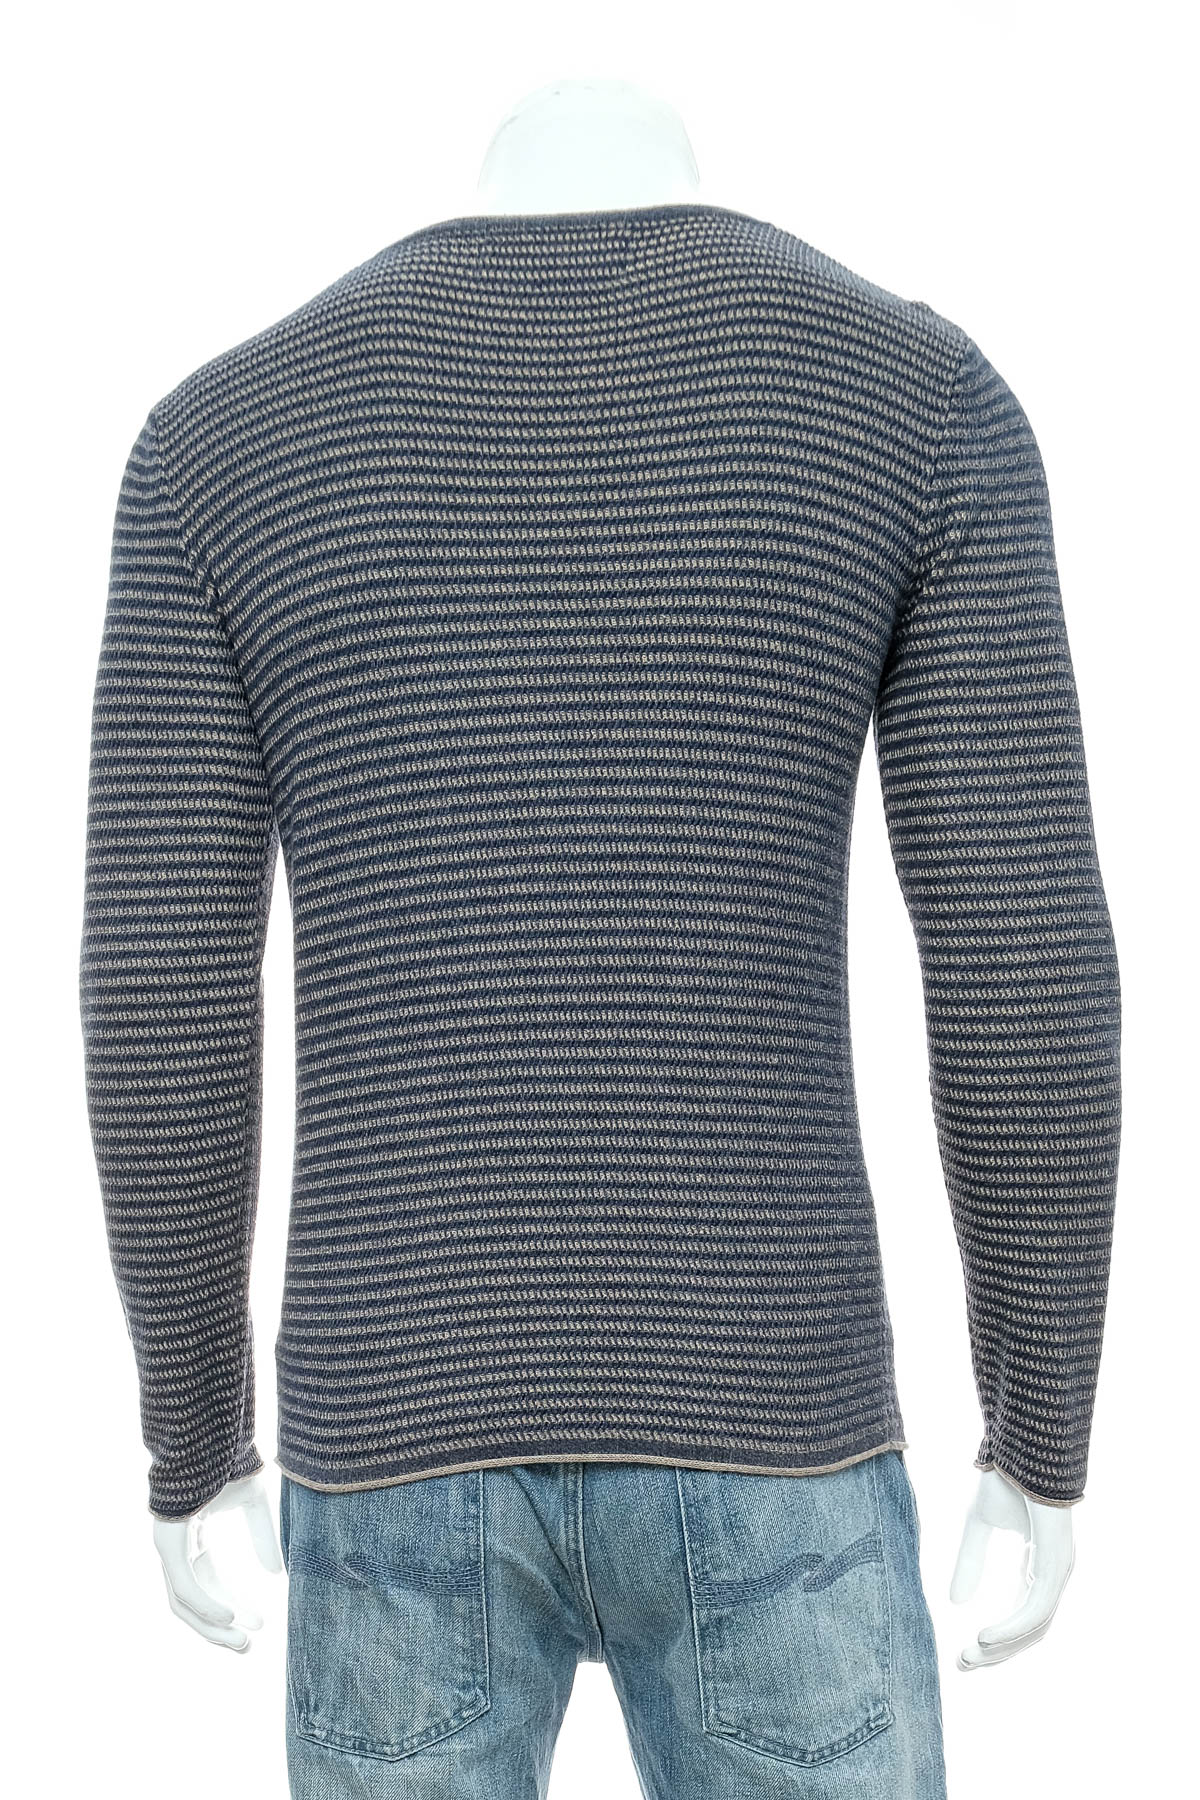 Men's sweater - Garcia Jeans - 1